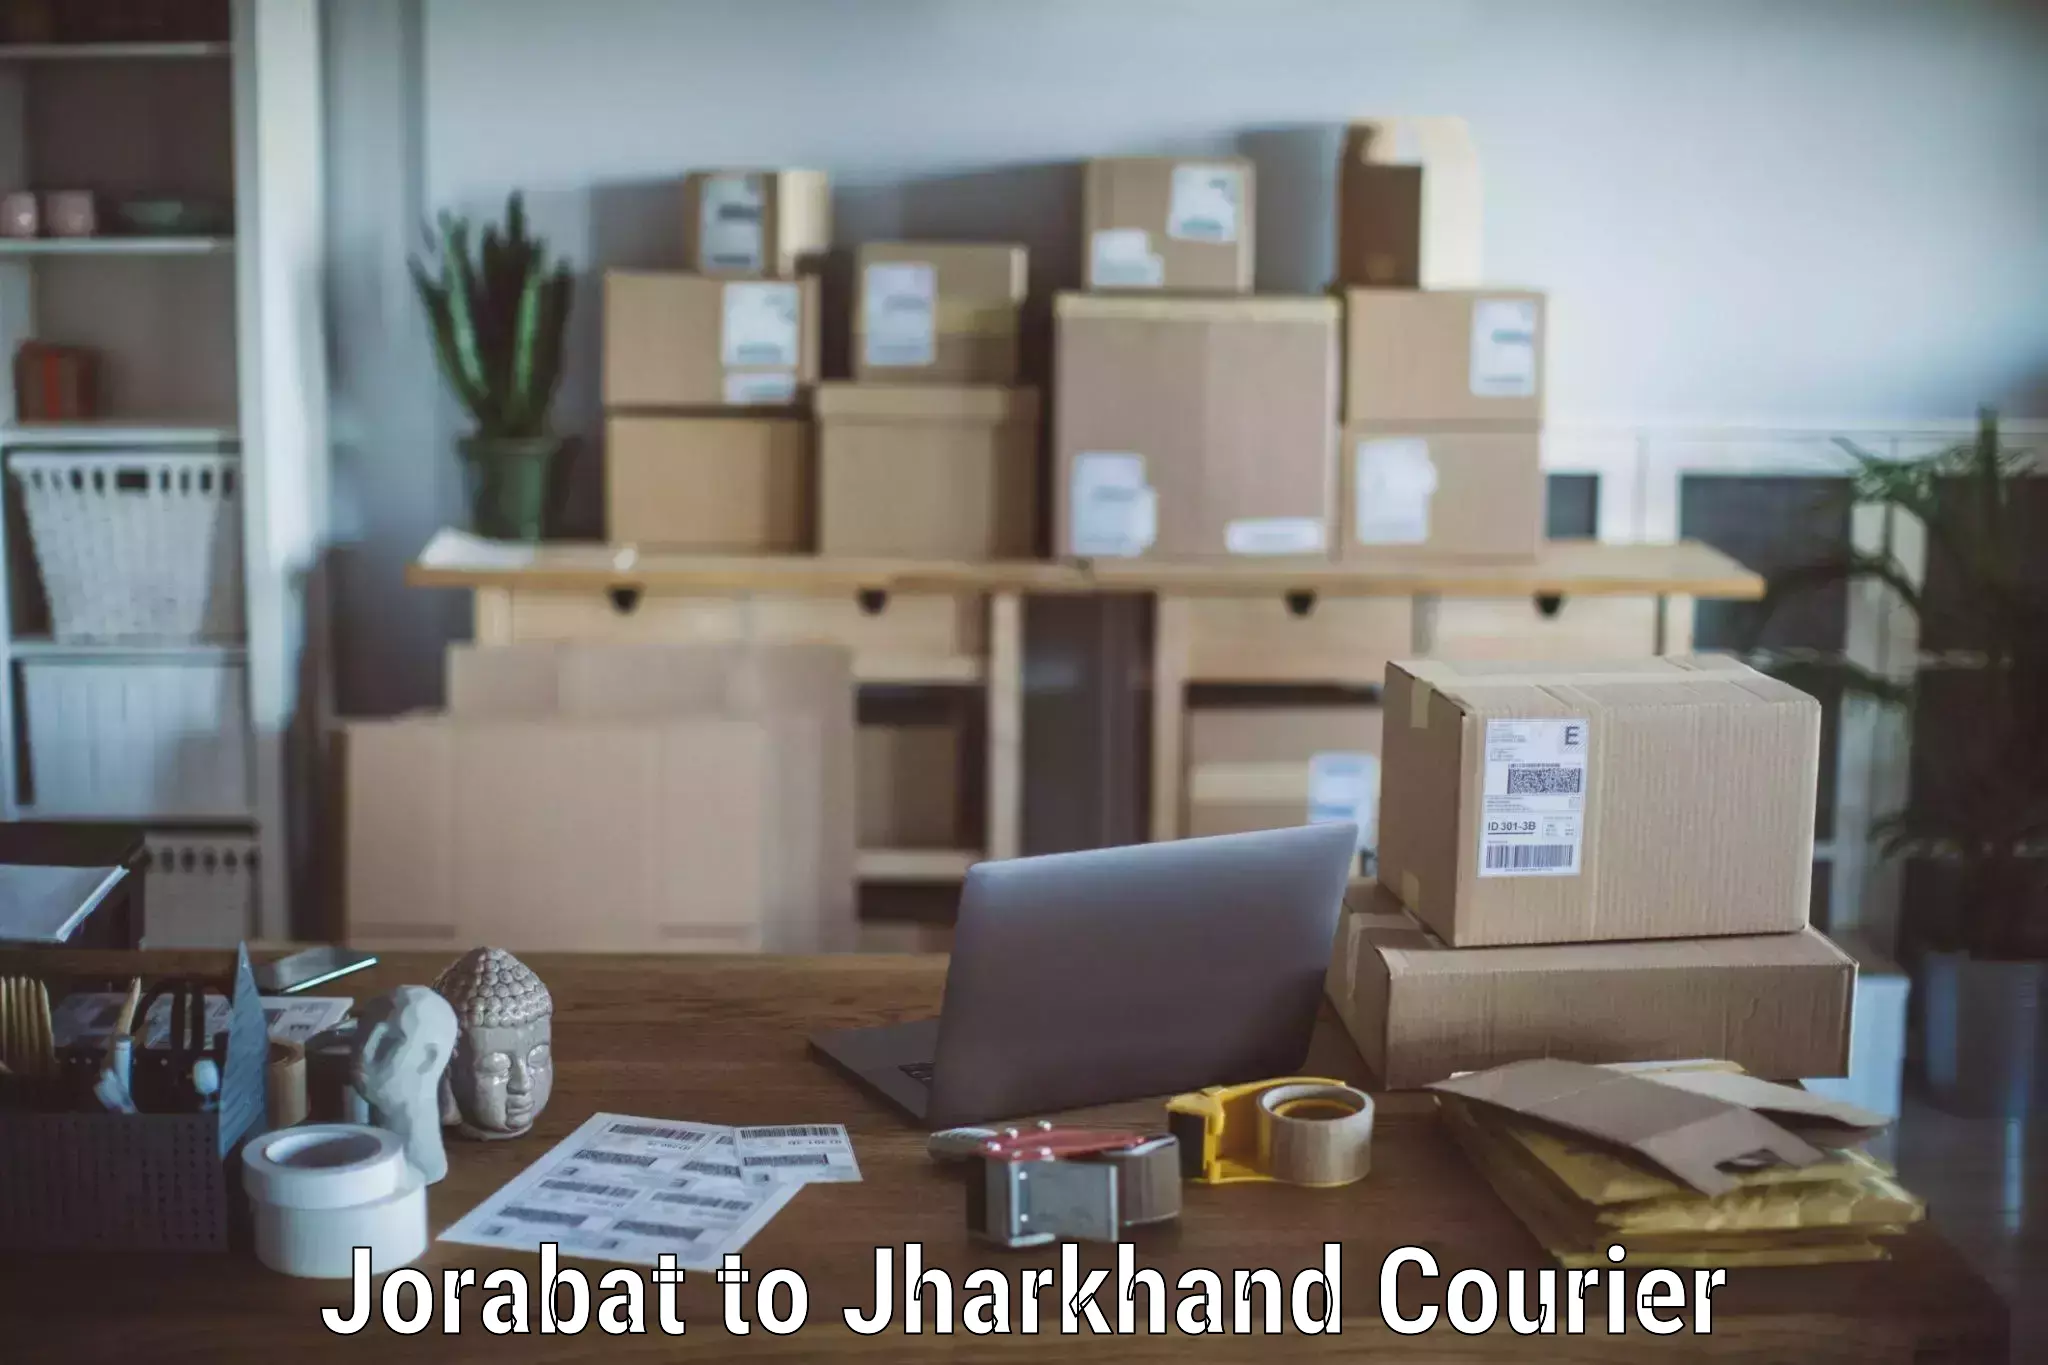 Furniture handling services Jorabat to Peterbar